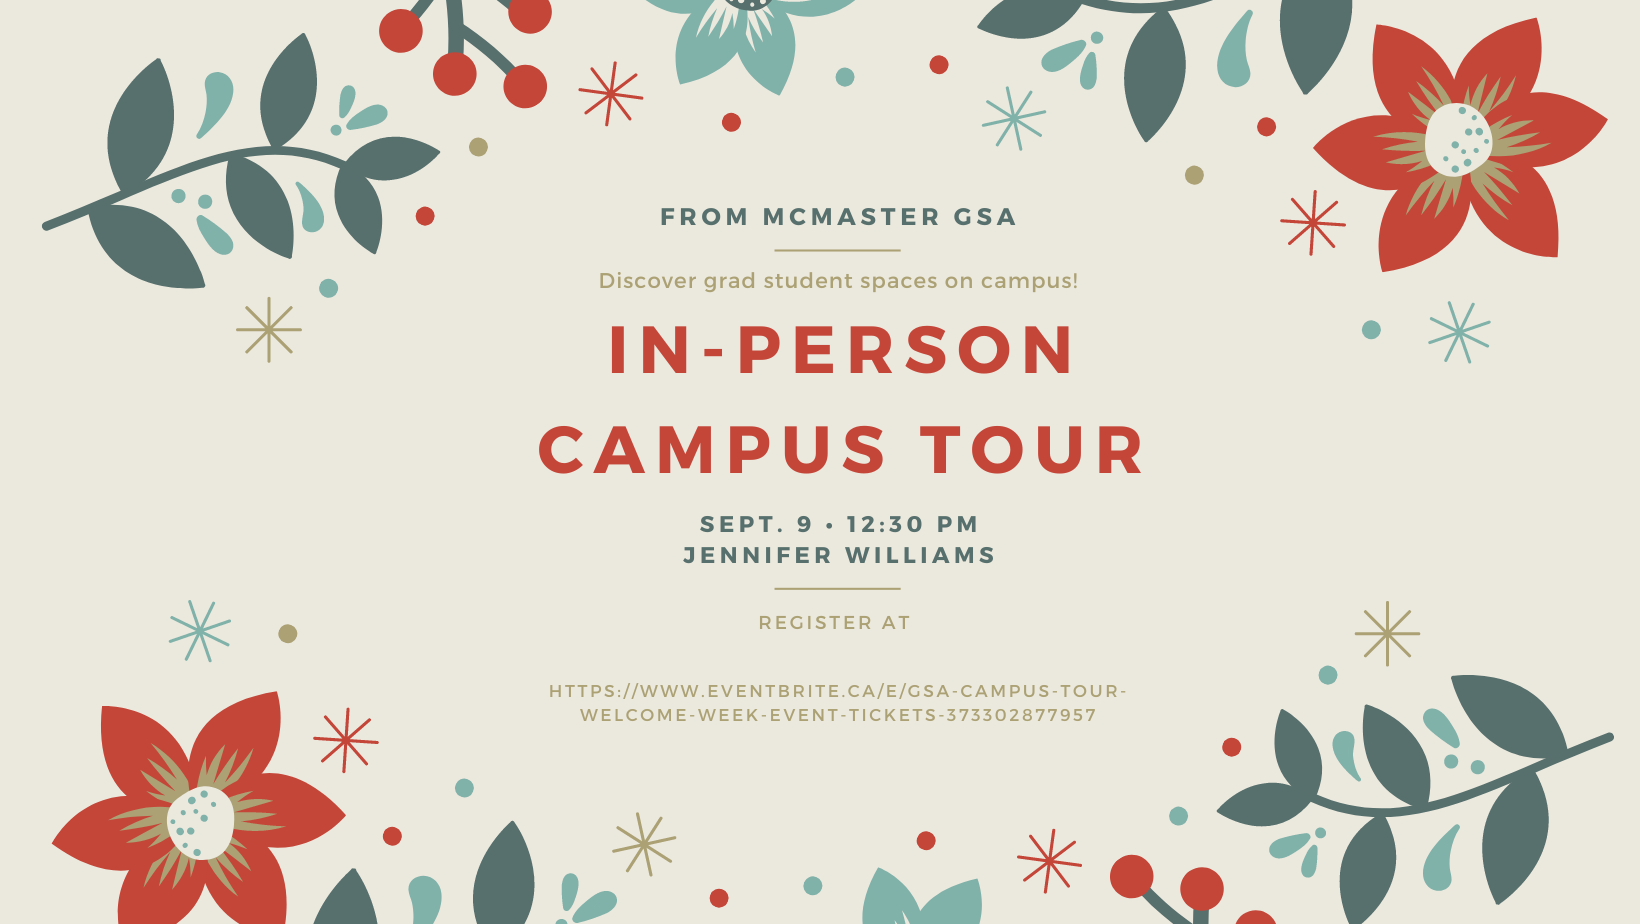 In-person campus tour, Sept 9, 12:30 p.m.